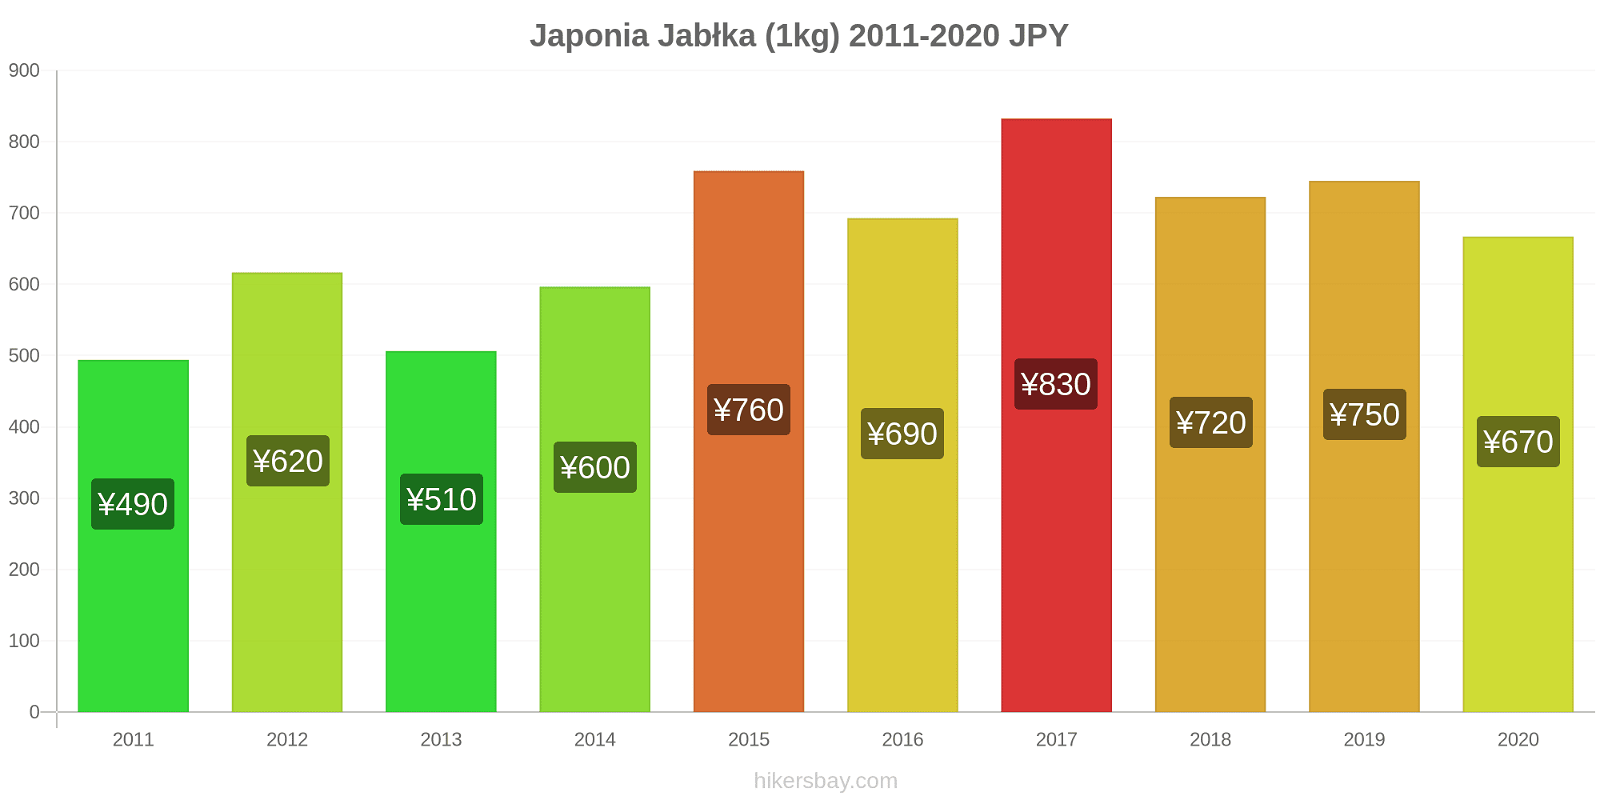 Japonia zmiany cen Jabłka (1kg) hikersbay.com